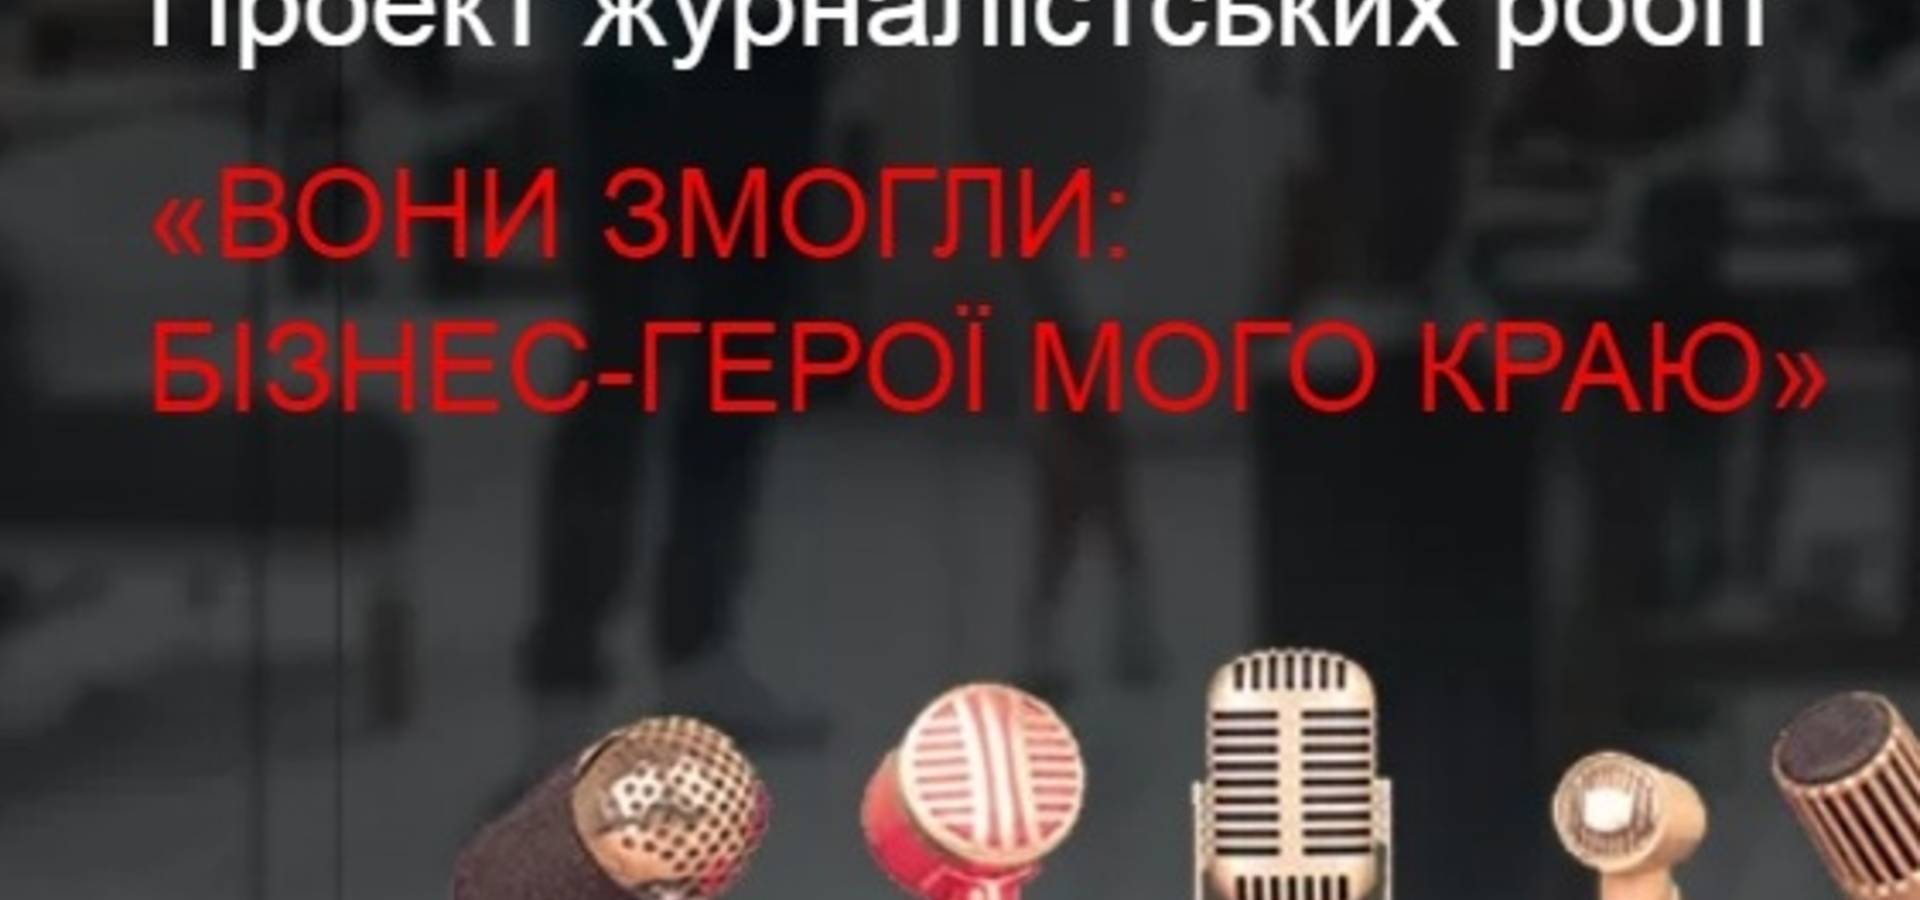 Всеукраїнський фінансовий сайт maanimo.com ініціює проект журналістських робіт 